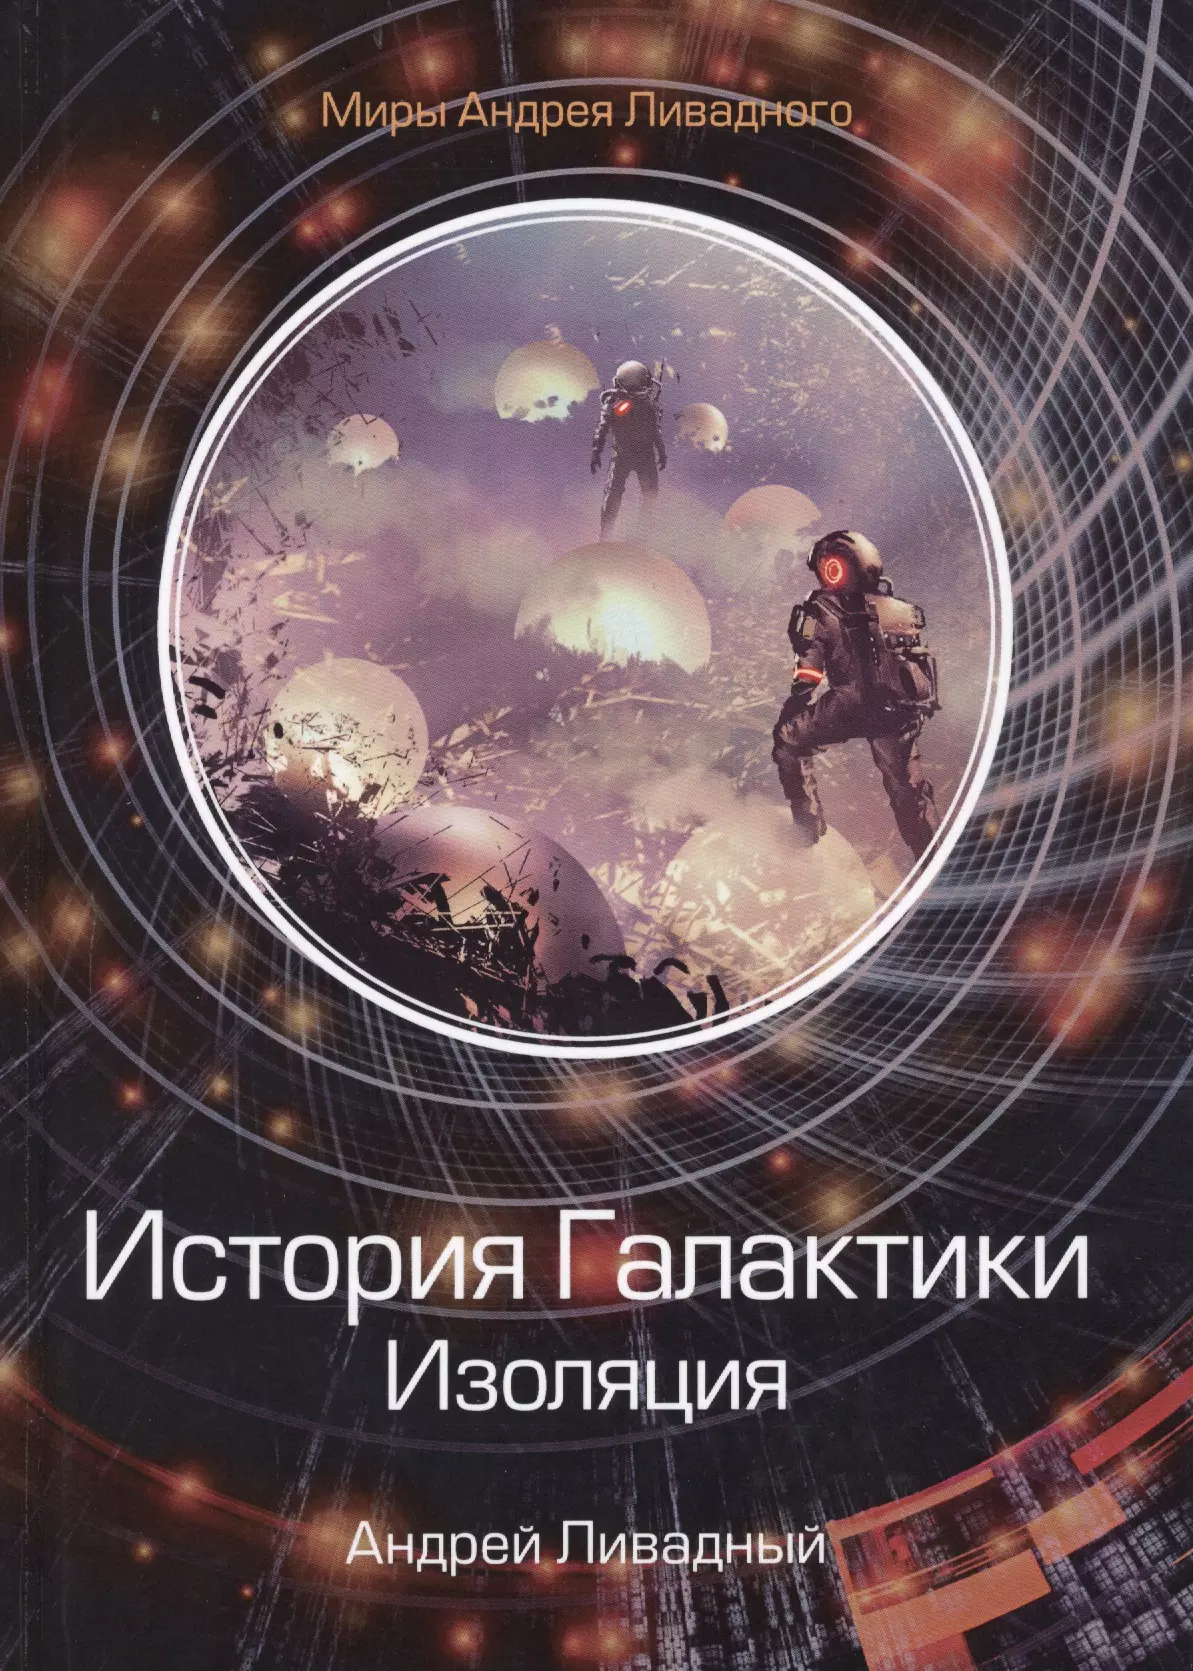 Ливадный Андрей Львович - История Галактики. Изоляция